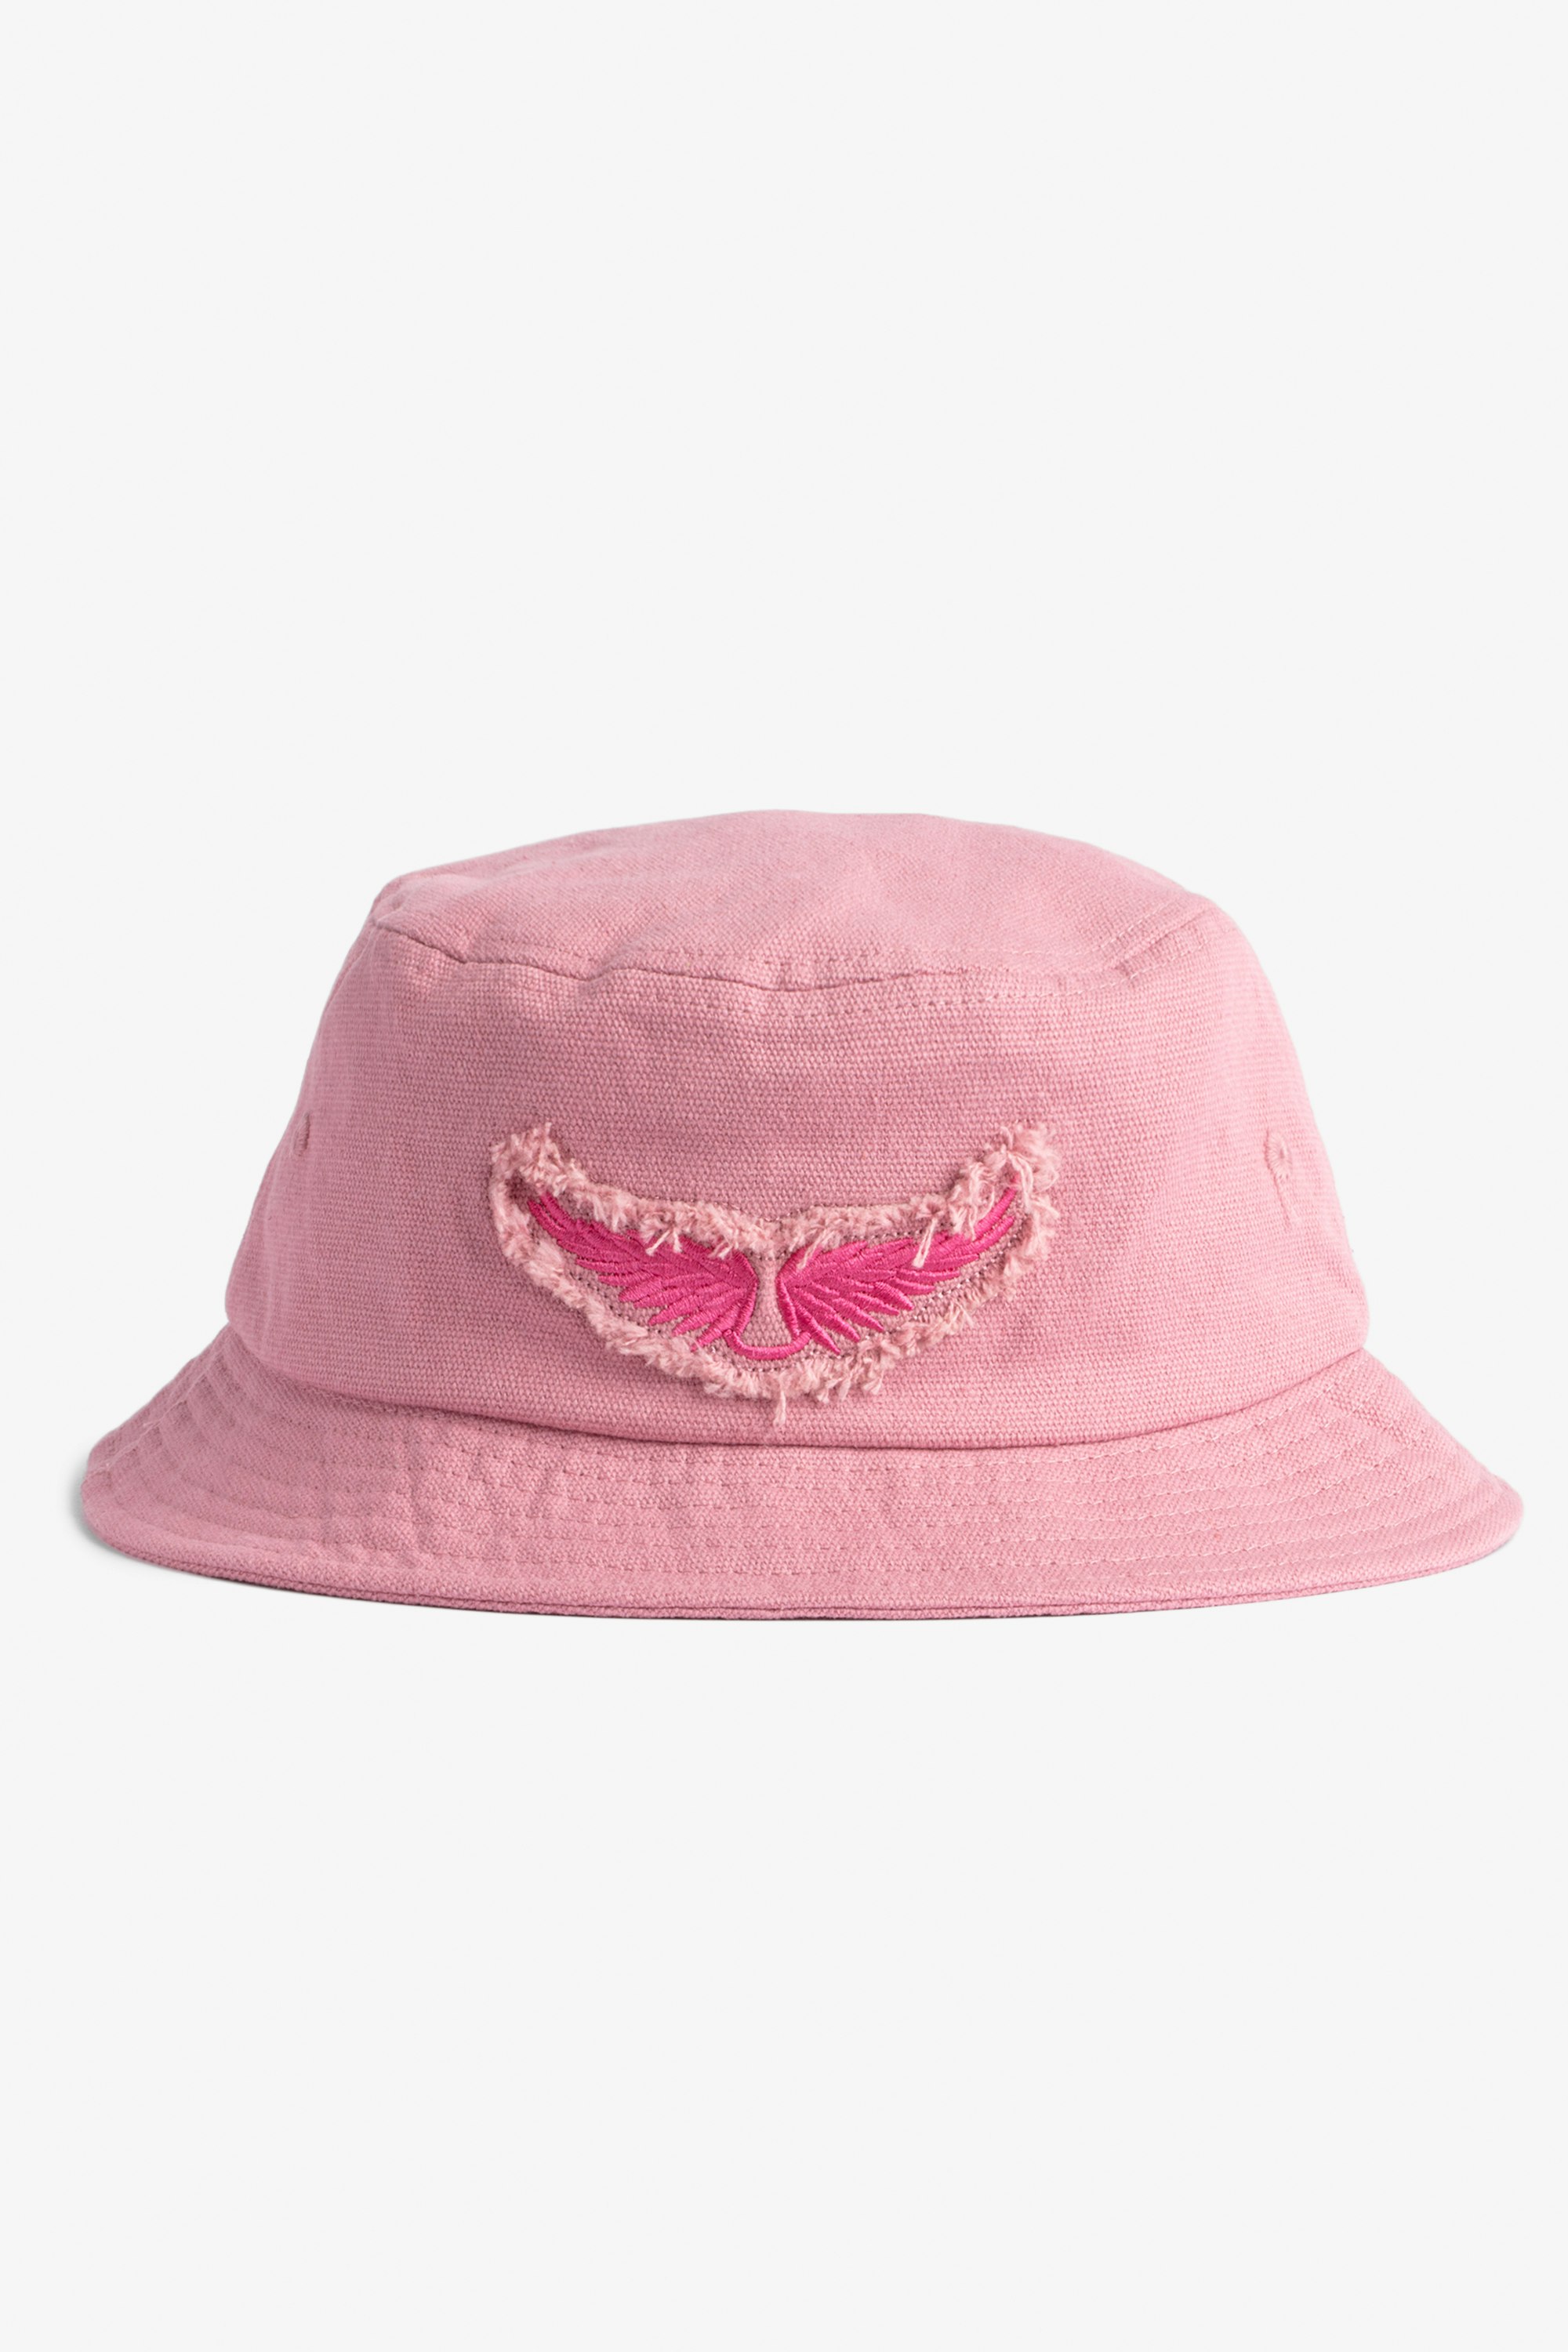 Wings Bucket Hat Women's pink cotton bucket hat